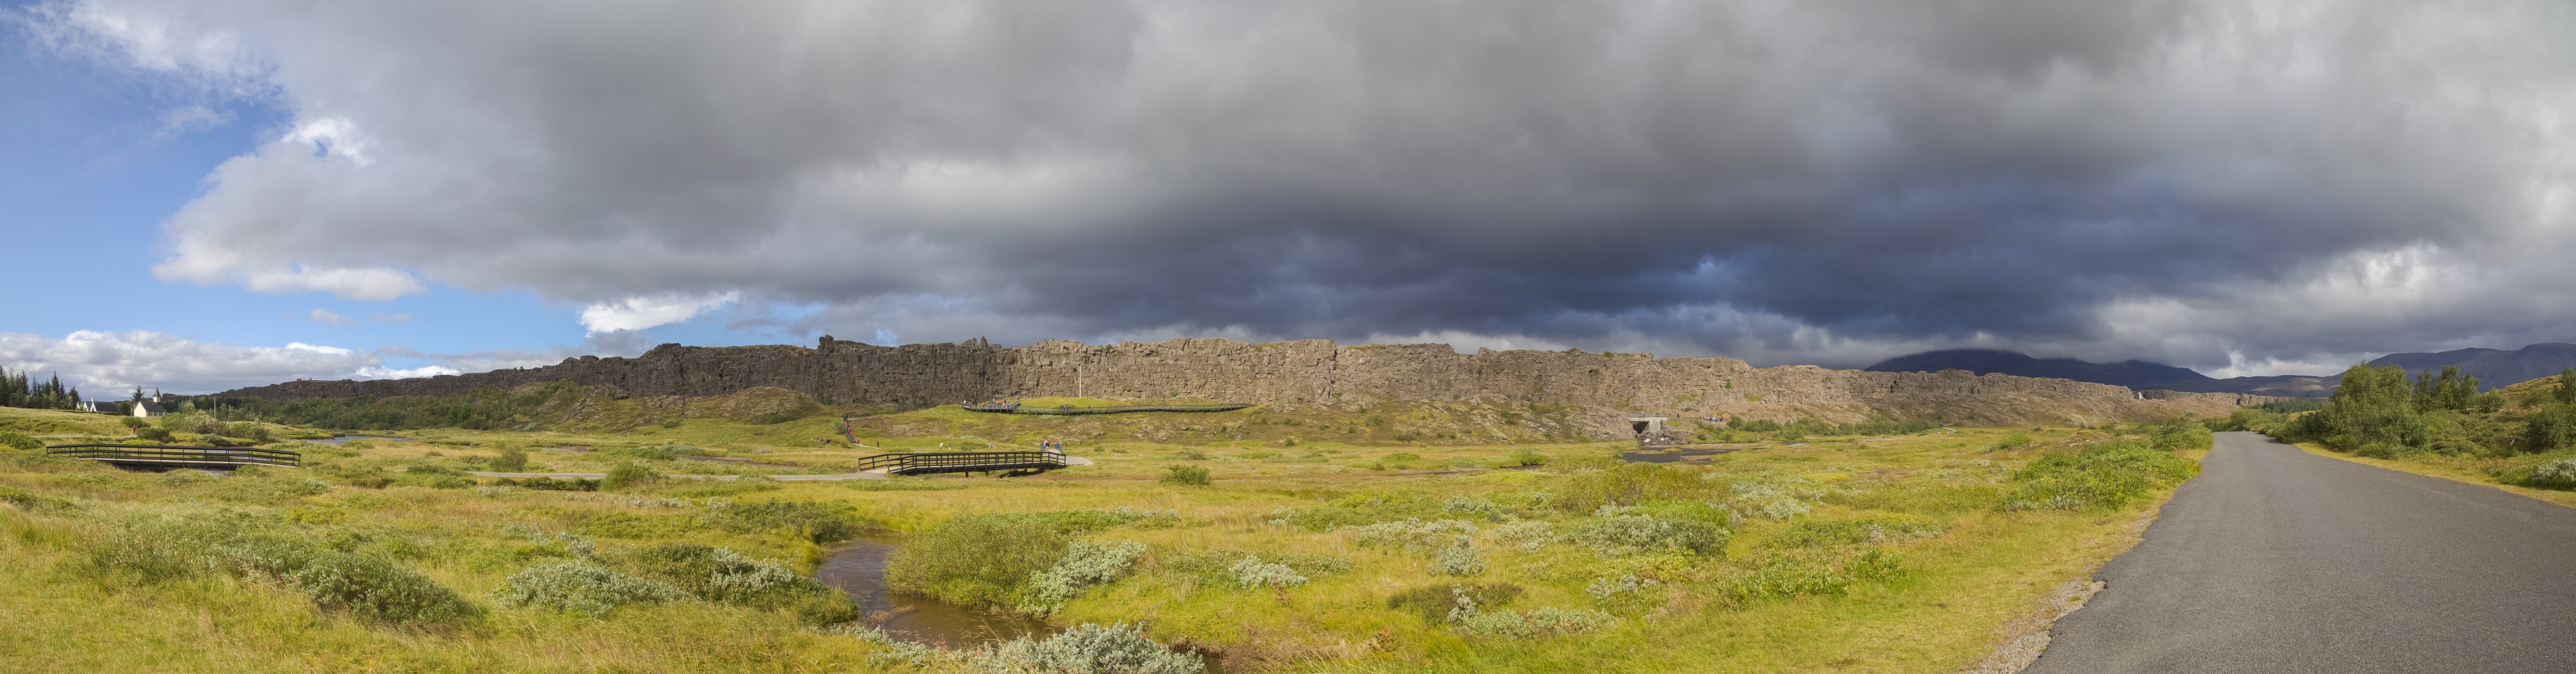 Roca de la Ley, Parque Nacional de Þingvellir, Suðurland, Islandia, 2014-08-16, DD 036-039 PAN